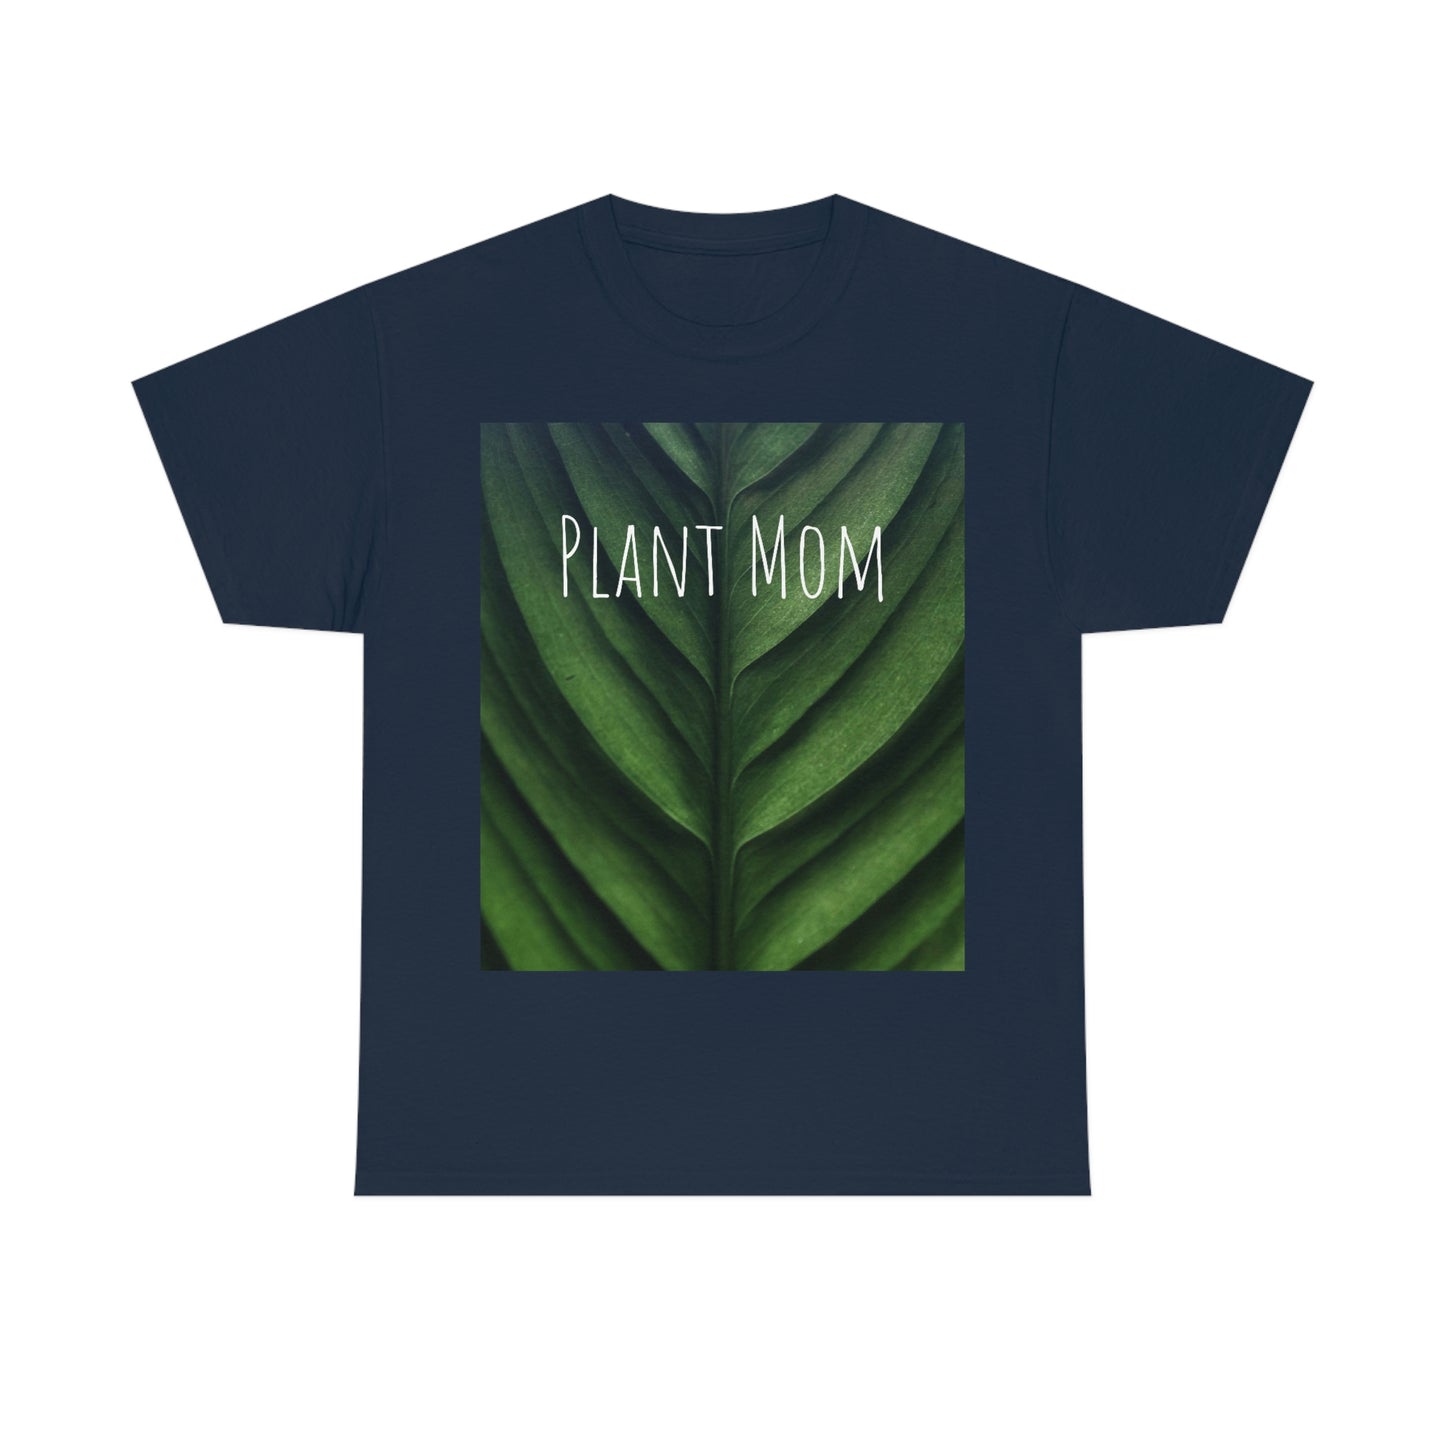 Women's "Plant Mom" Heavy Cotton Tee